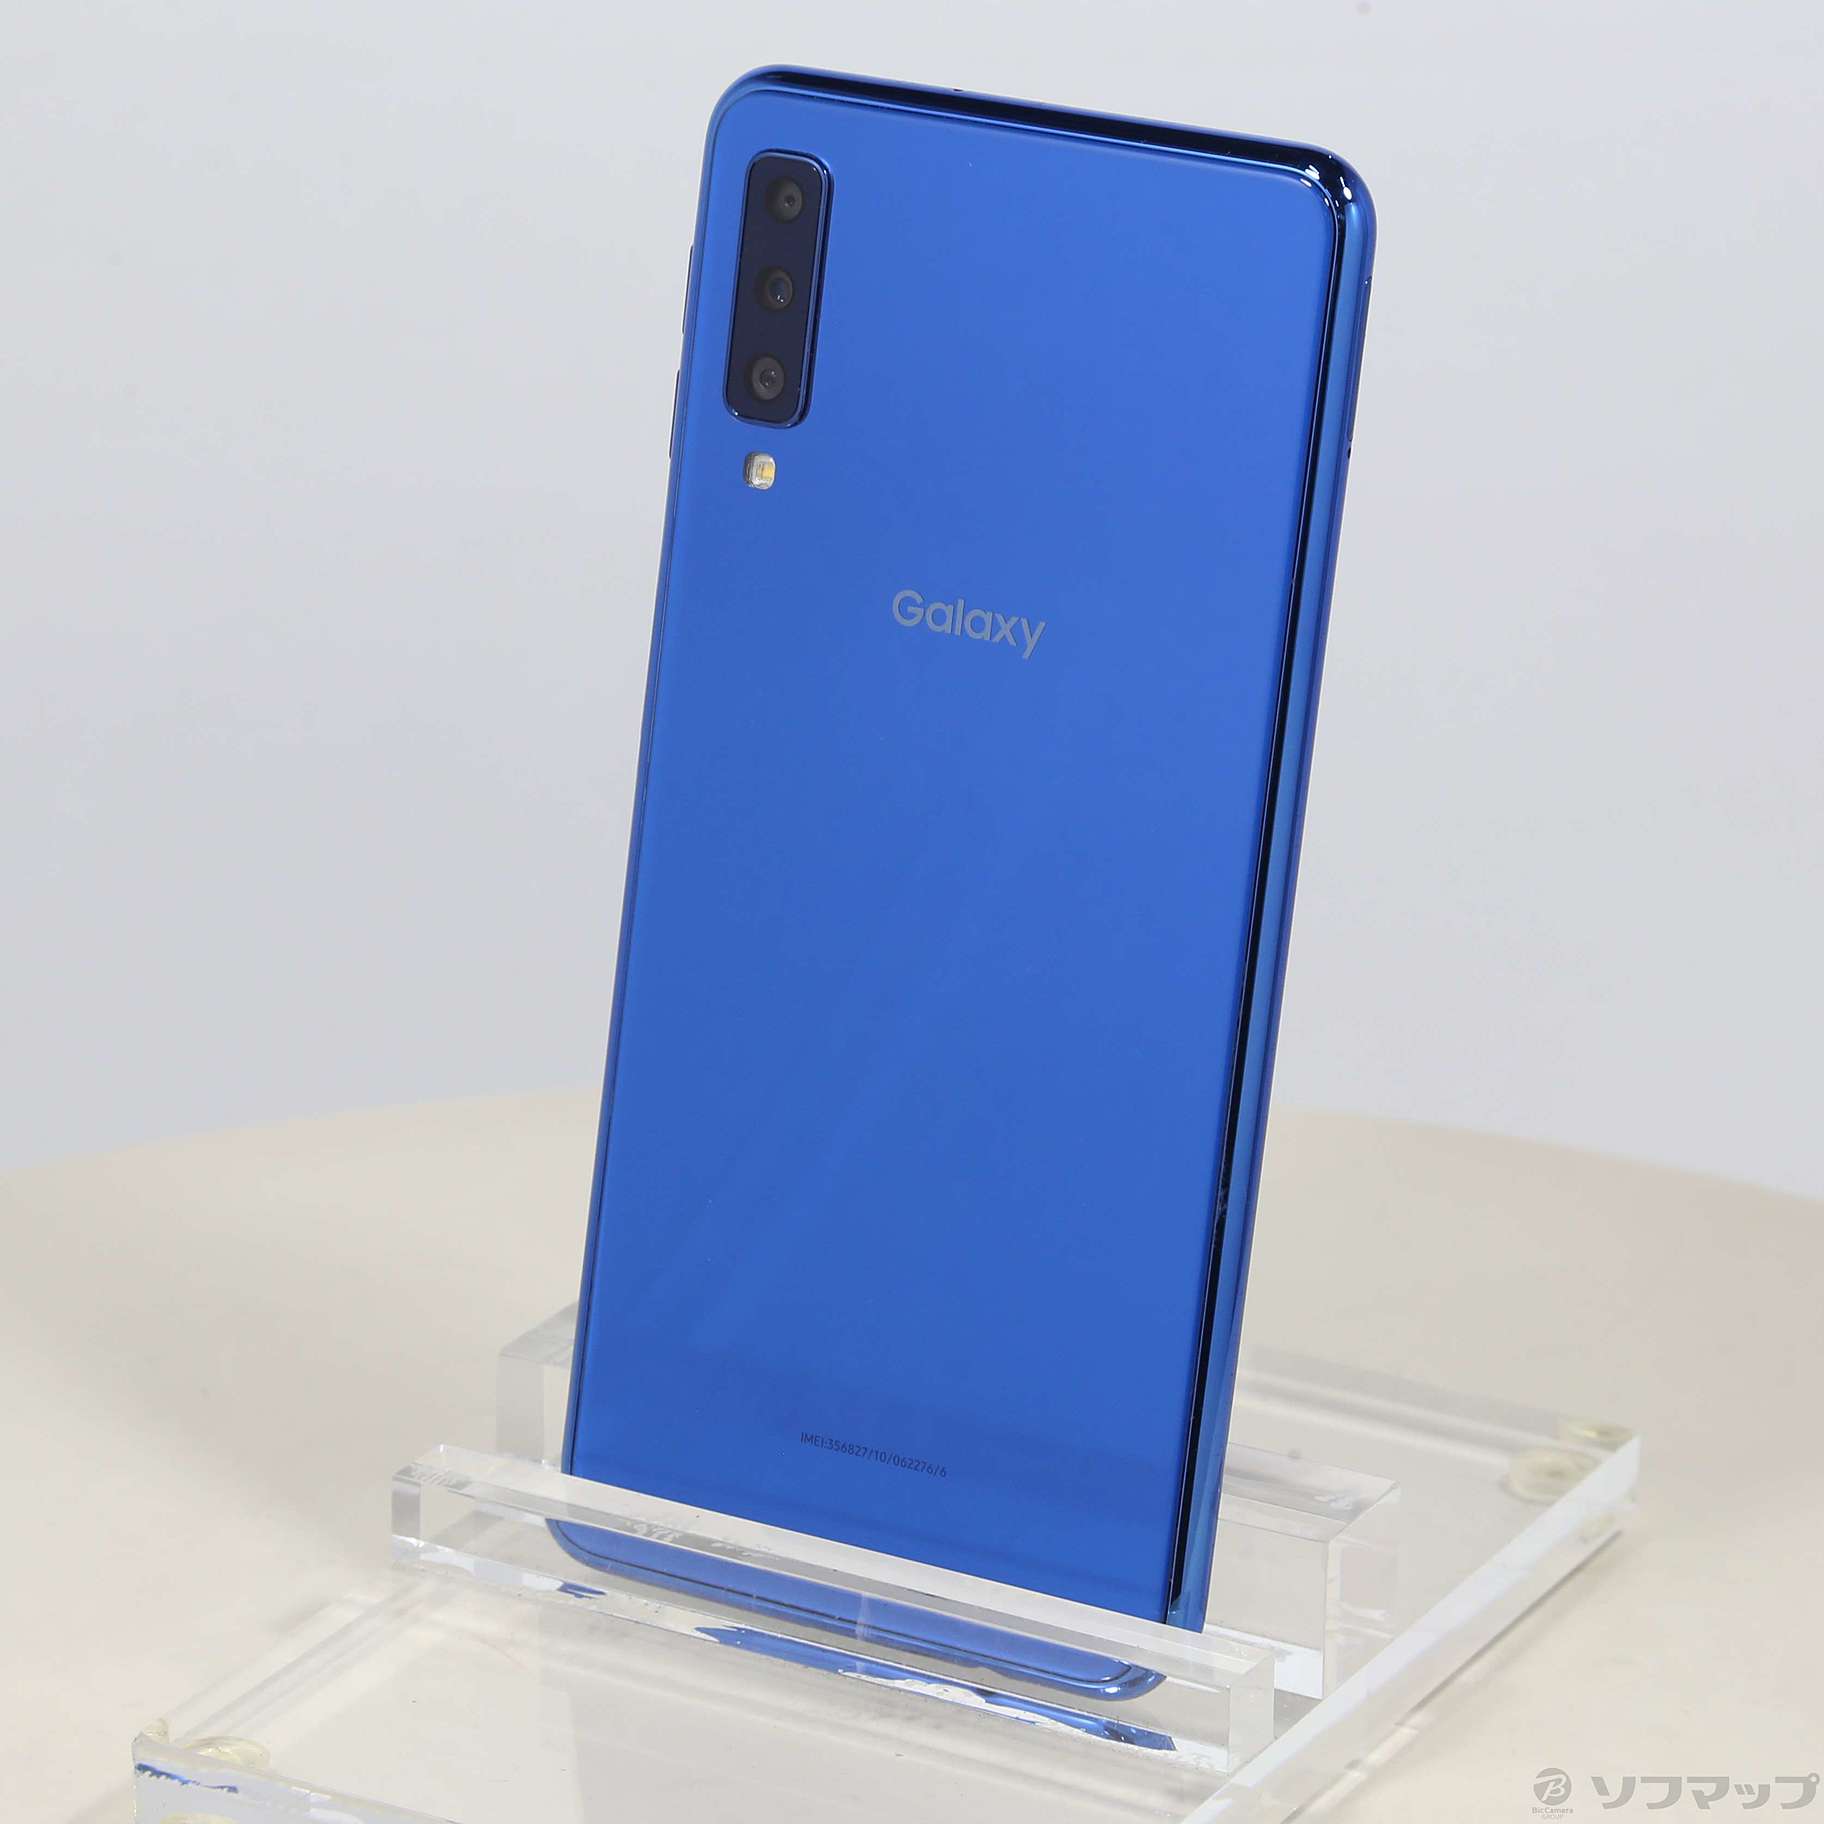 Galaxy A7 ブルー - スマートフォン本体